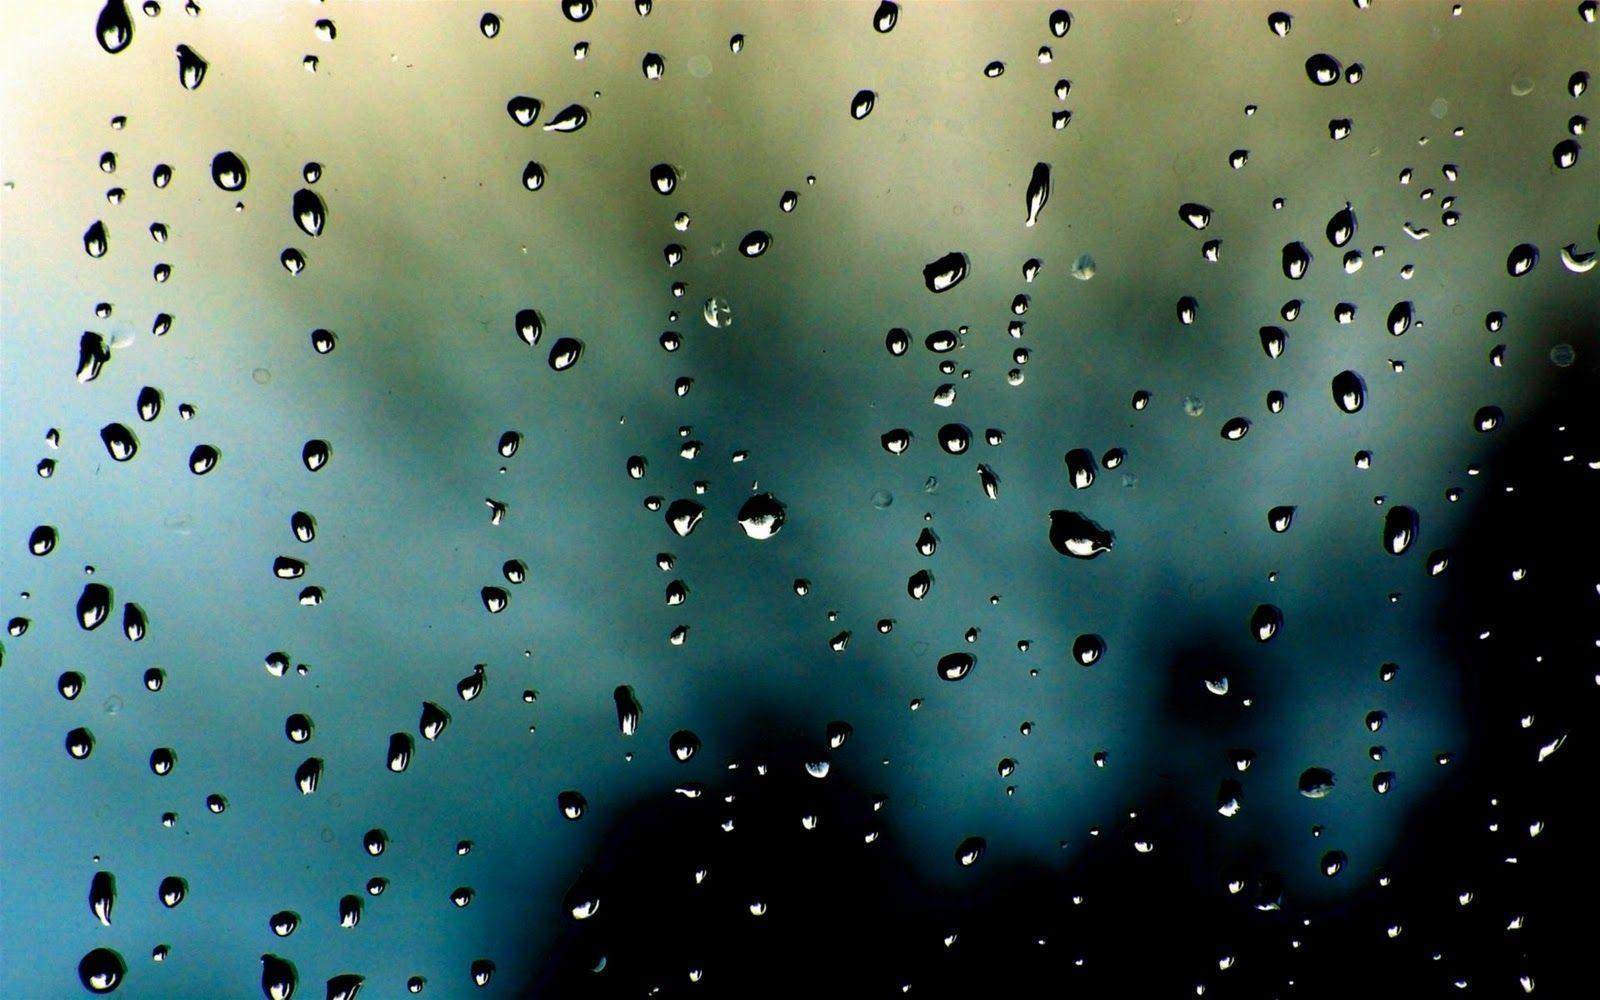 Rain Drops HD Wallpaper. fbpapa